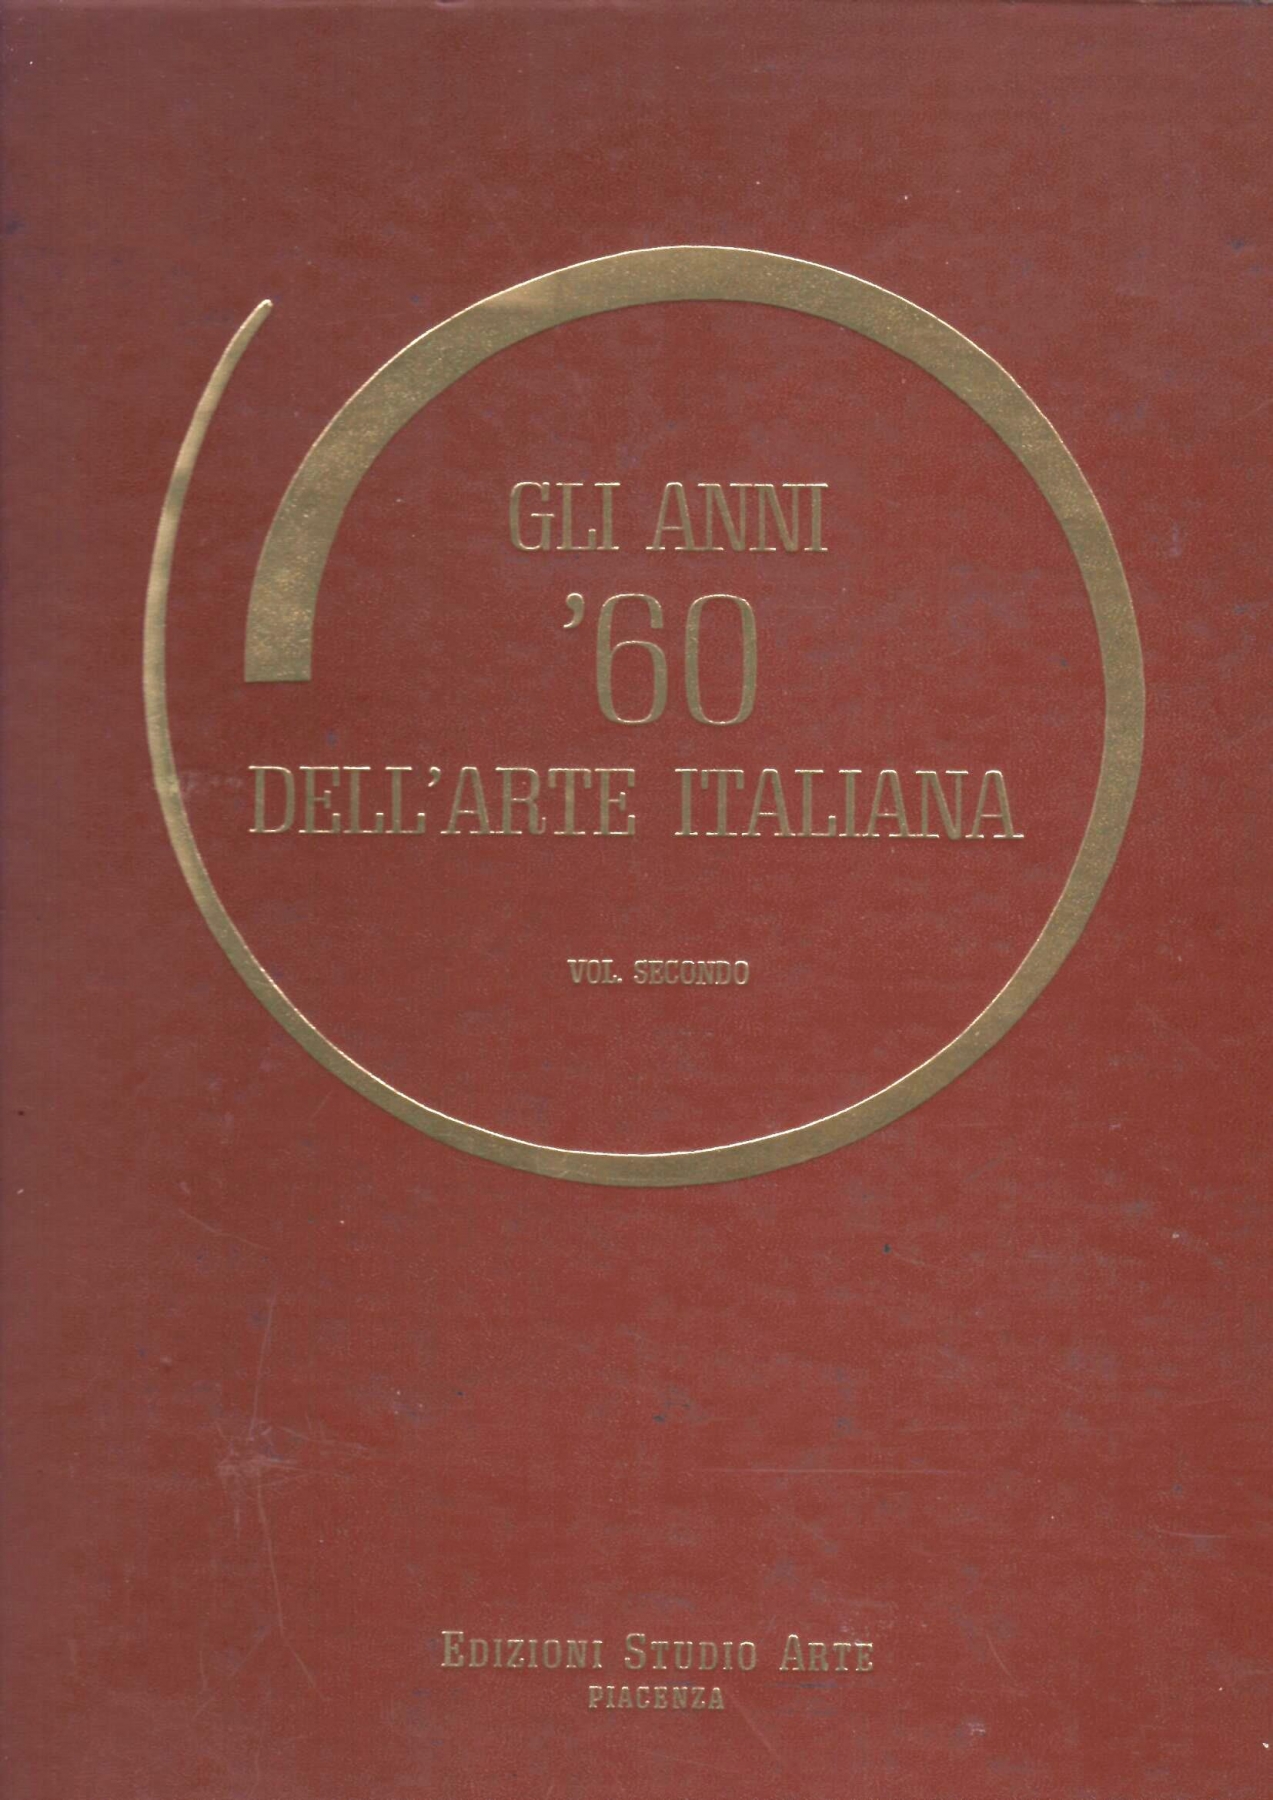  <b>Volume gli anni 60 dellArte Italiana del 1967, pag. 45 </b> - Pubblicazione dipinto di Amleto Bertrand 'Focalizzazione di un'idea'